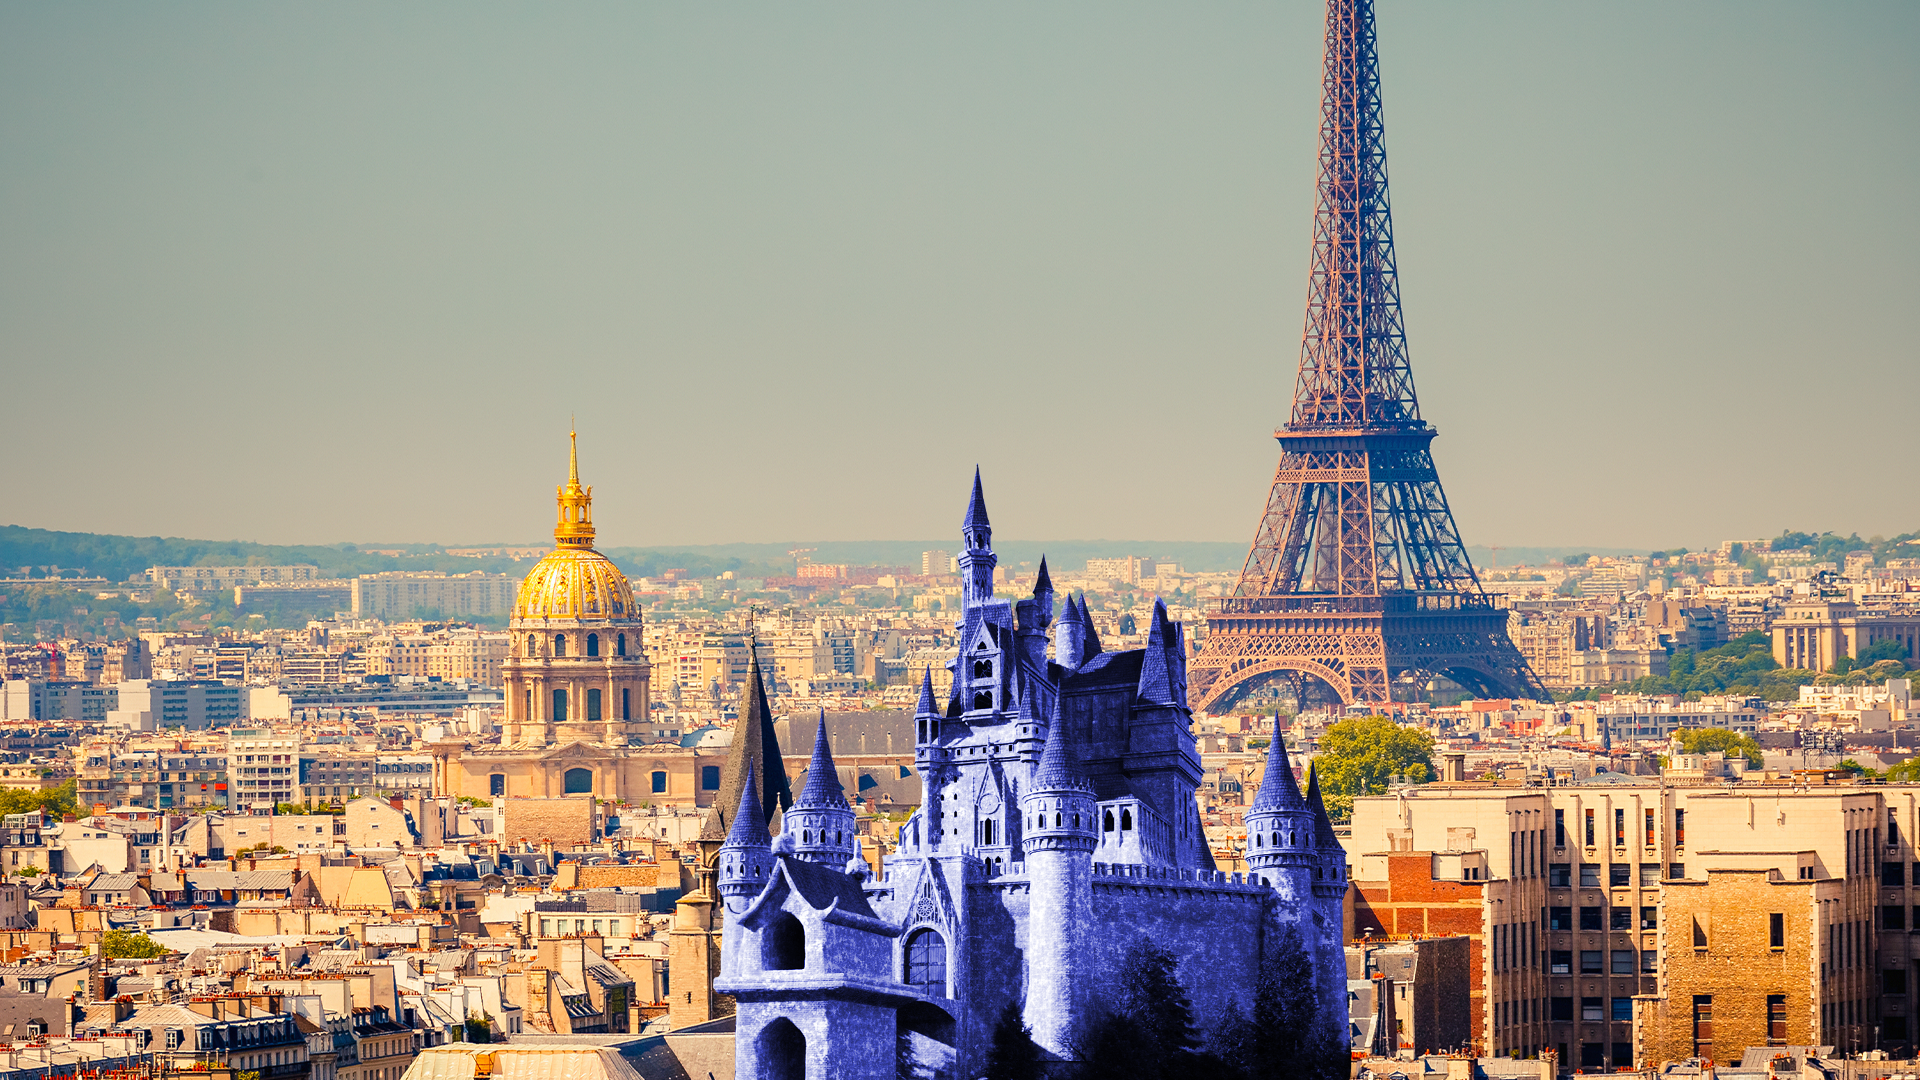 Paris with Disney castle